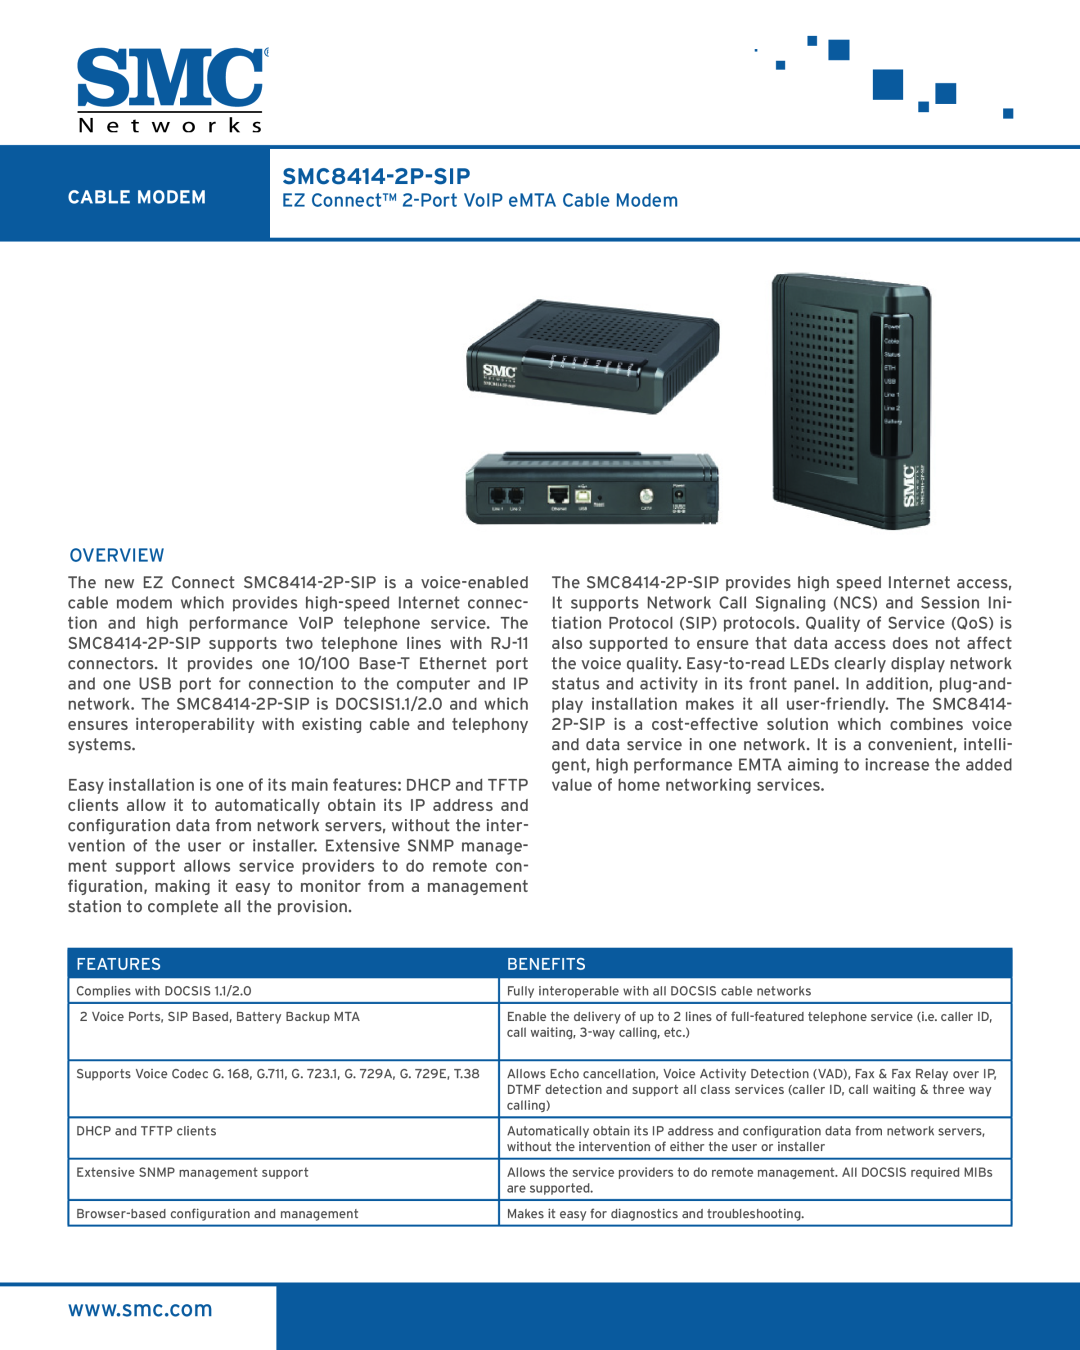 SMC Networks SMC8414-2P-SIP manual EZ Connect 2-Port VoIP eMTA Cable Modem, Overview, Features, Benefits 